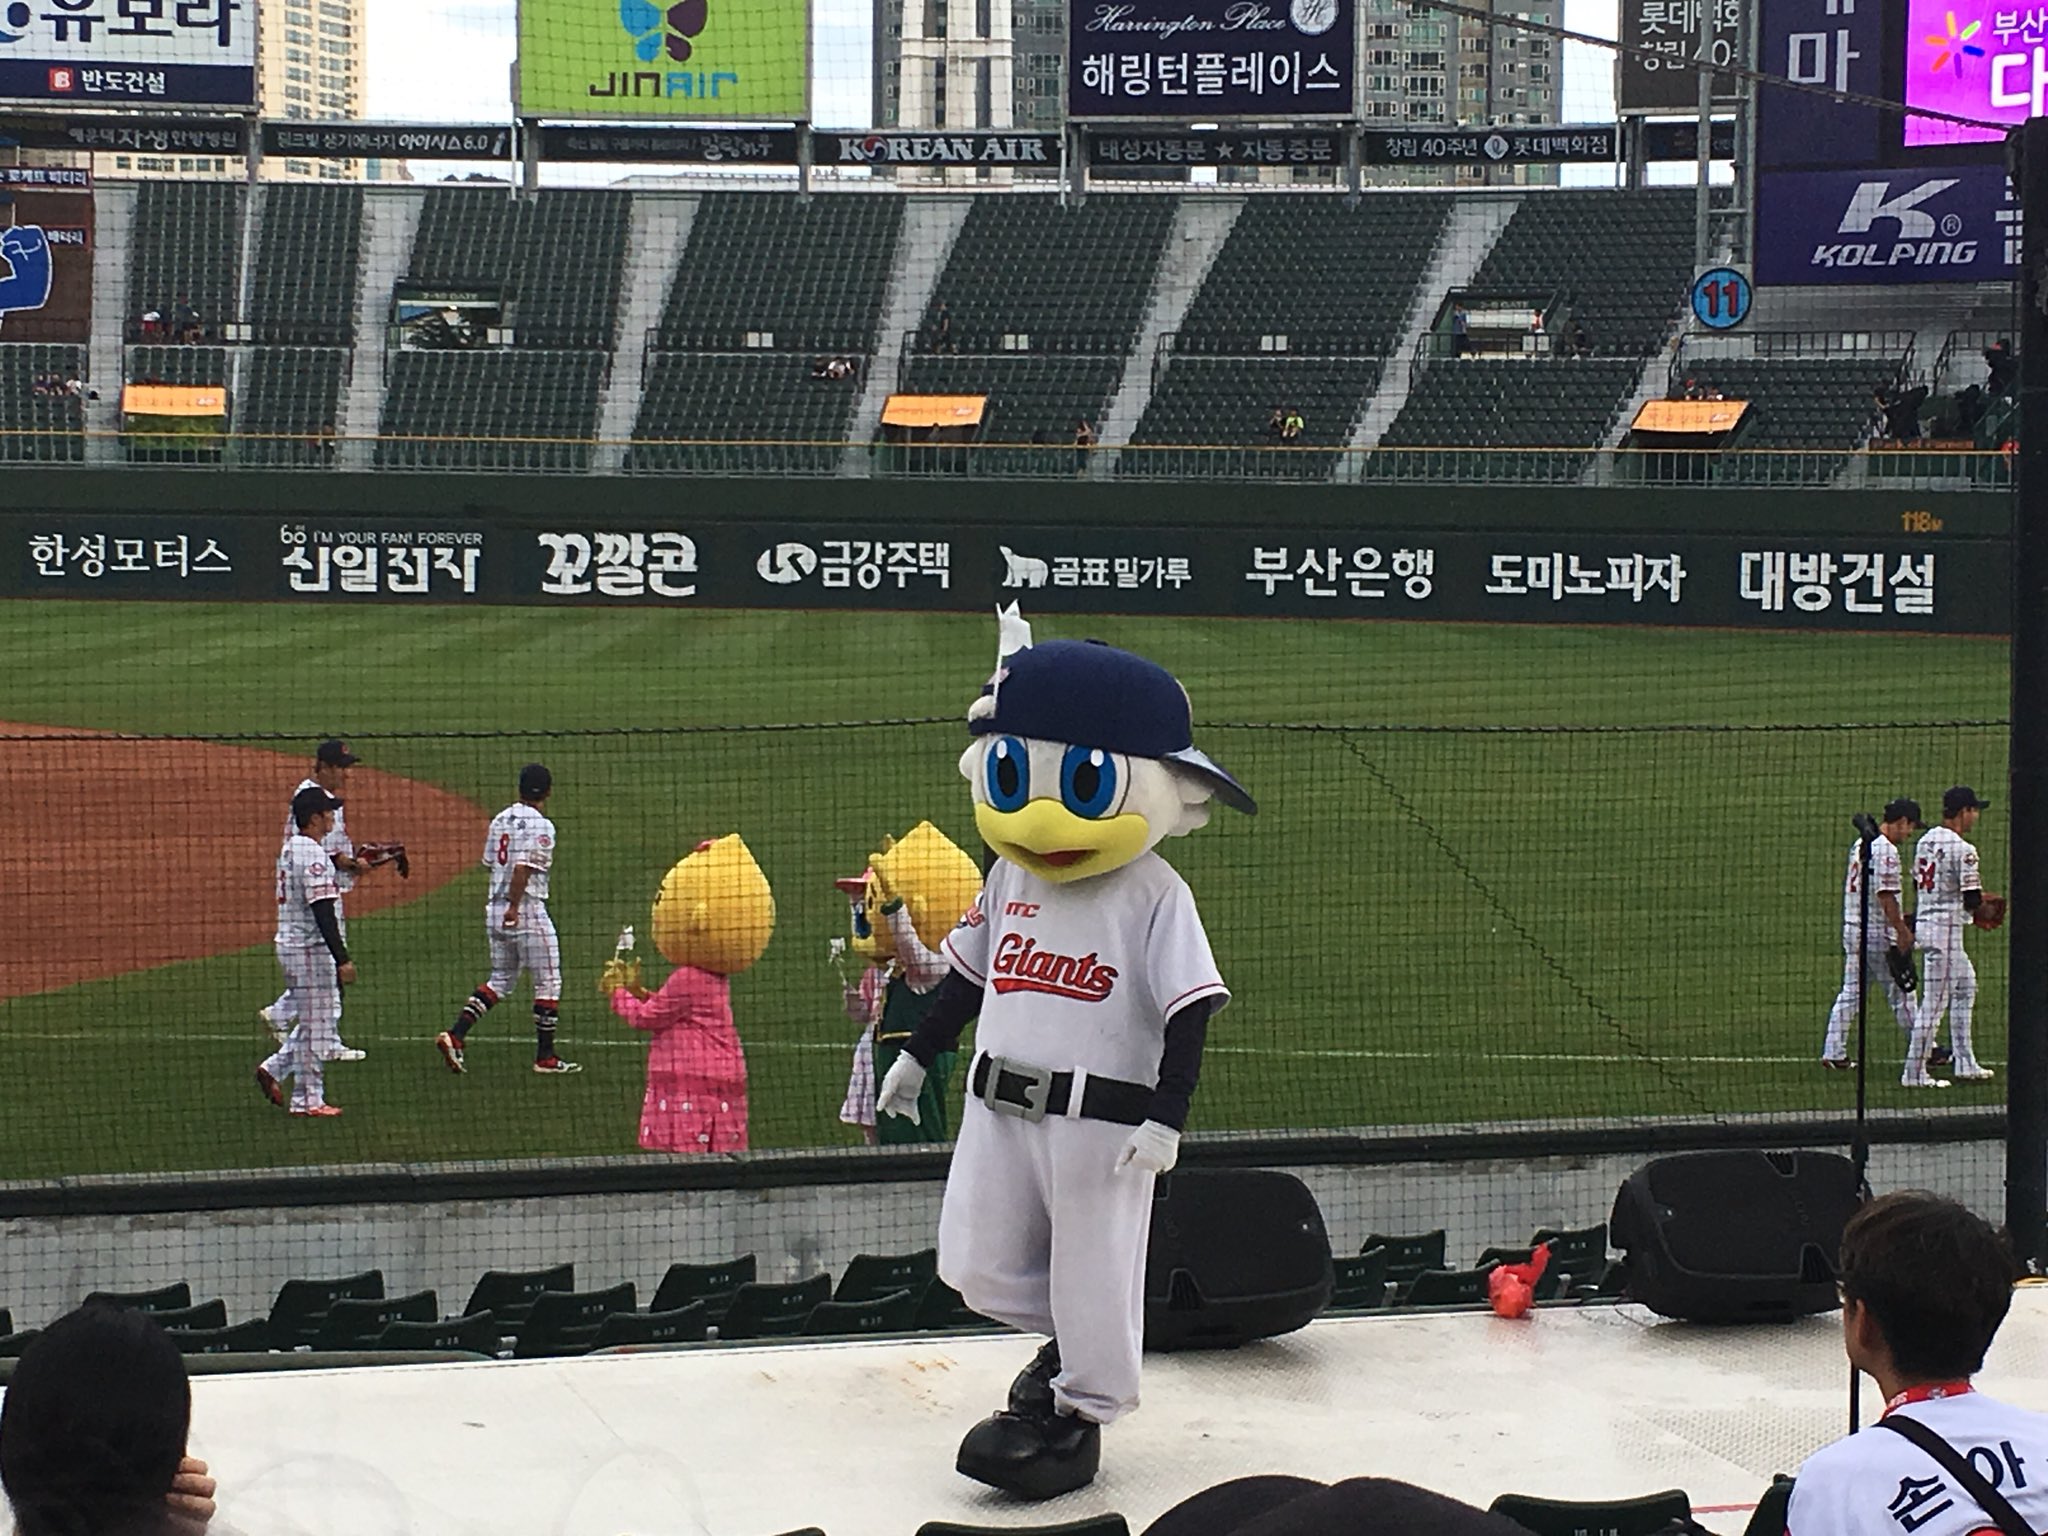 わしお 韓国の球団マスコット 承前 しかし実物は どうしても目が怖く感じます でもステージでは元気いっぱい お客さんを盛り上げます 続く プロ野球 韓国 Kbo T Co Lqclbieknz Twitter